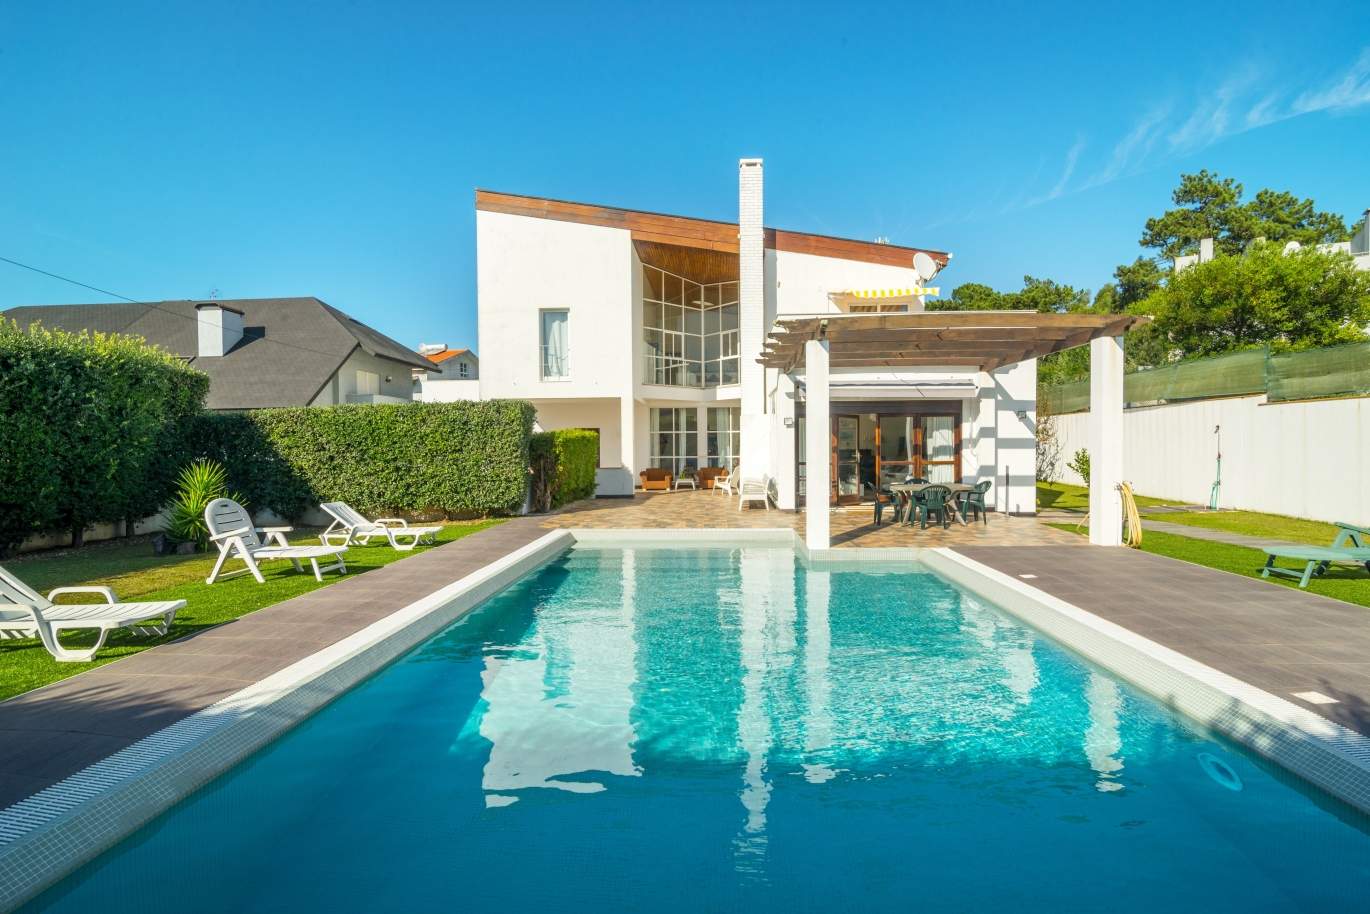 Haus mit Garten und Pool, zu verkaufen, in der Nähe von Miramar Beach, Porto, Portugal_153794